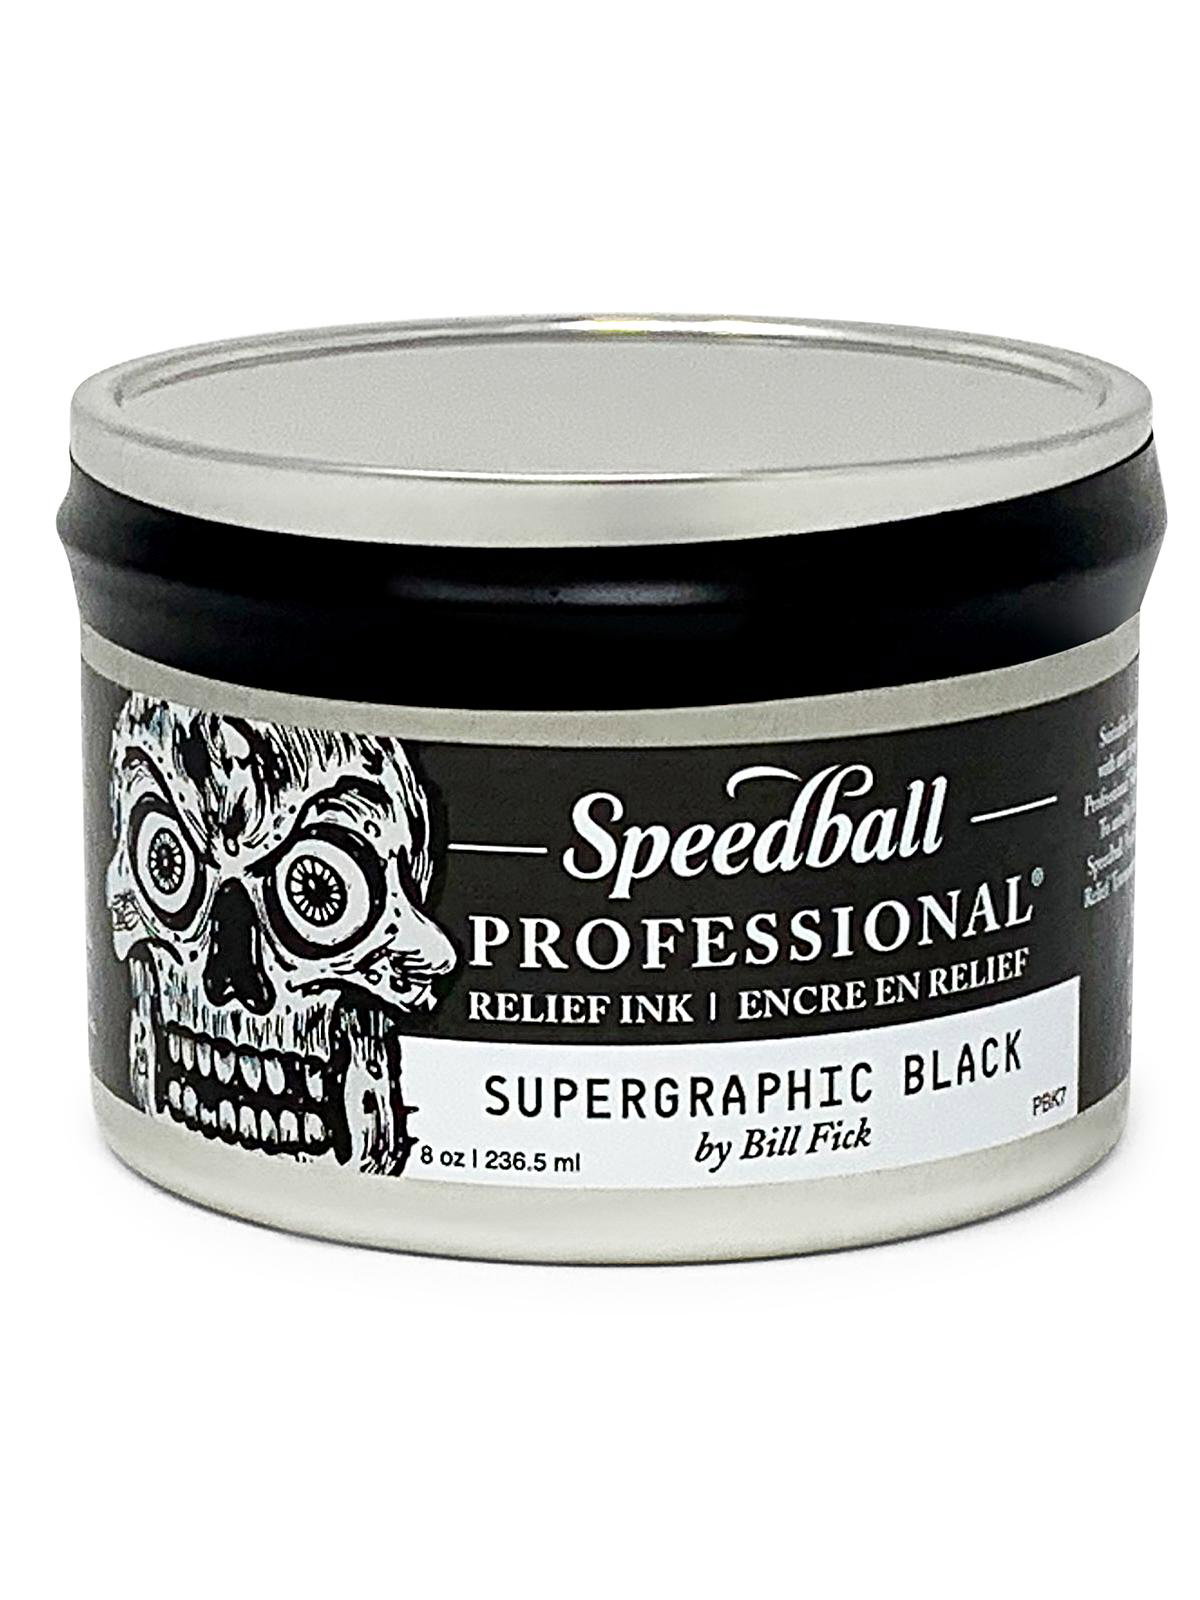 Supergraphic Black